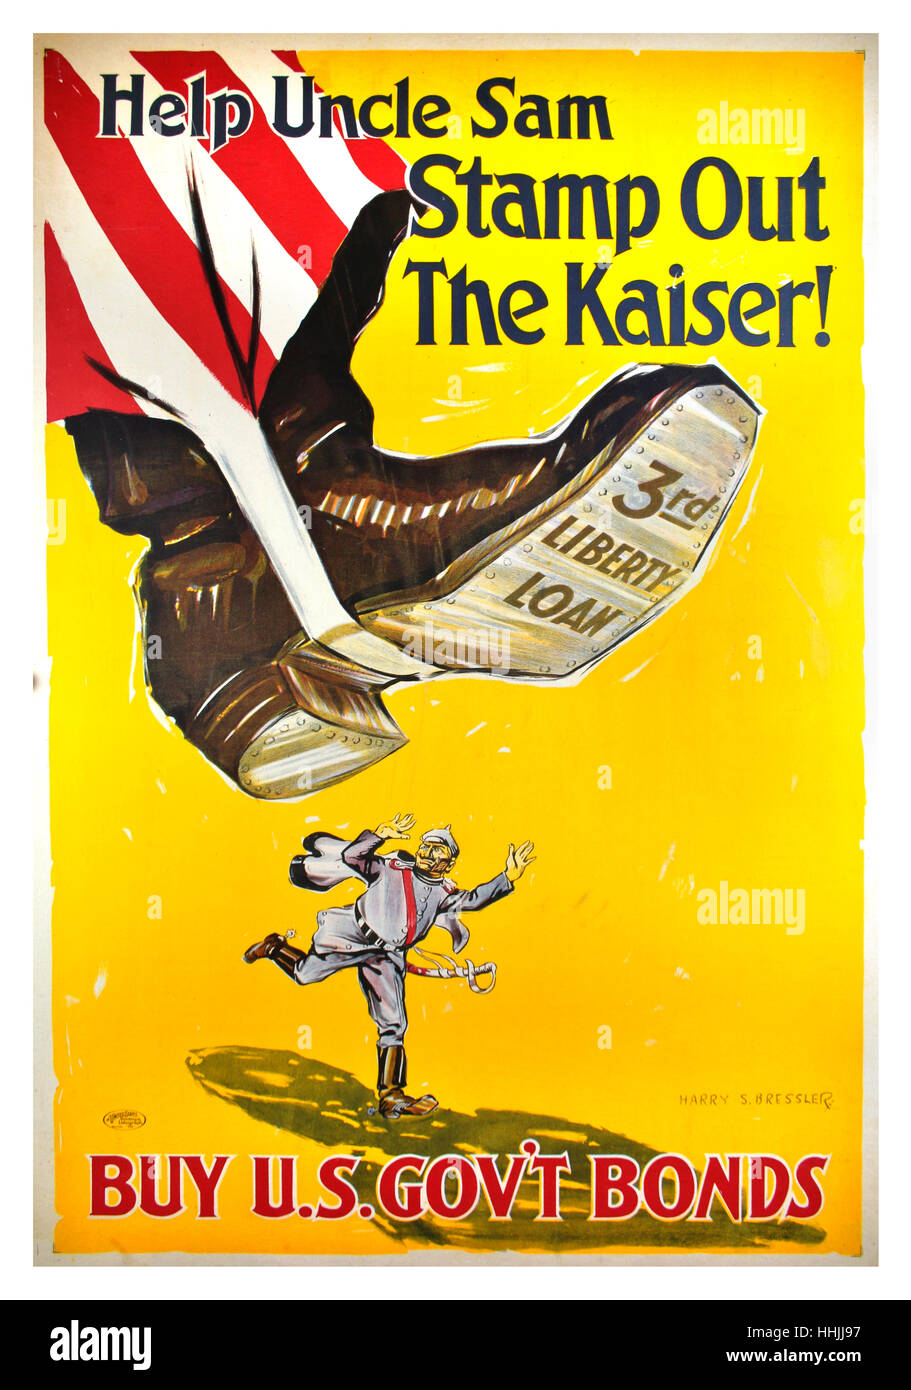 1918 original USA WW1 Propagandaplakat entworfen von Harry S. Bressler, für die Dritte Kampagne Liberty Bond ausgestellt Frühjahr 1918. Plakat zeigt mächtige Boot von Onkel Sam etwas komisch Ausrottung der Kaiser Wilhelm König von Preußen. Stockfoto